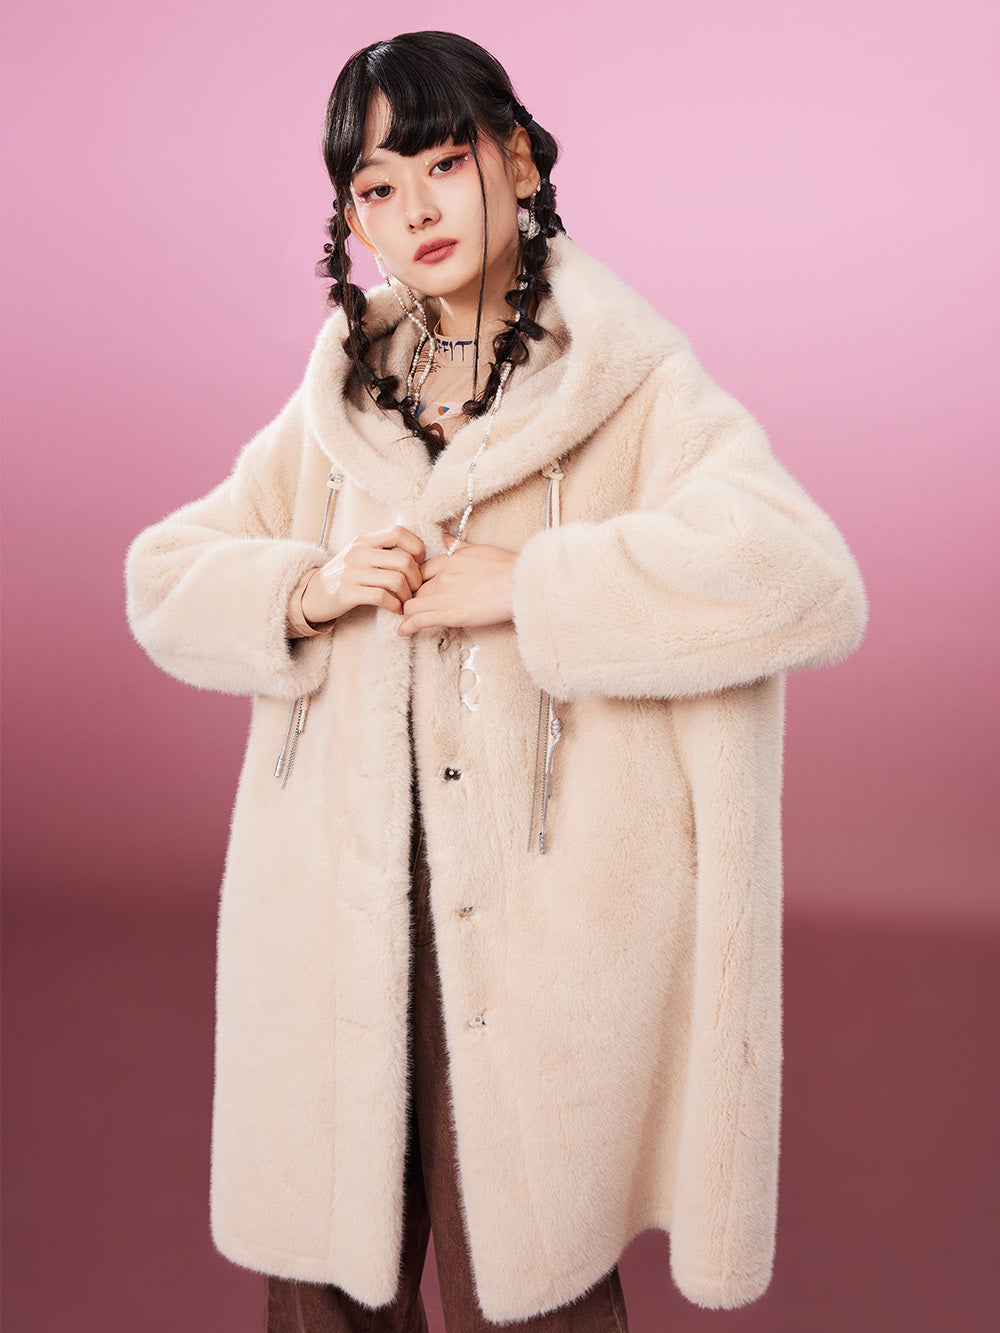 MUKZIN Cute Warm Long Beige Fur Coat